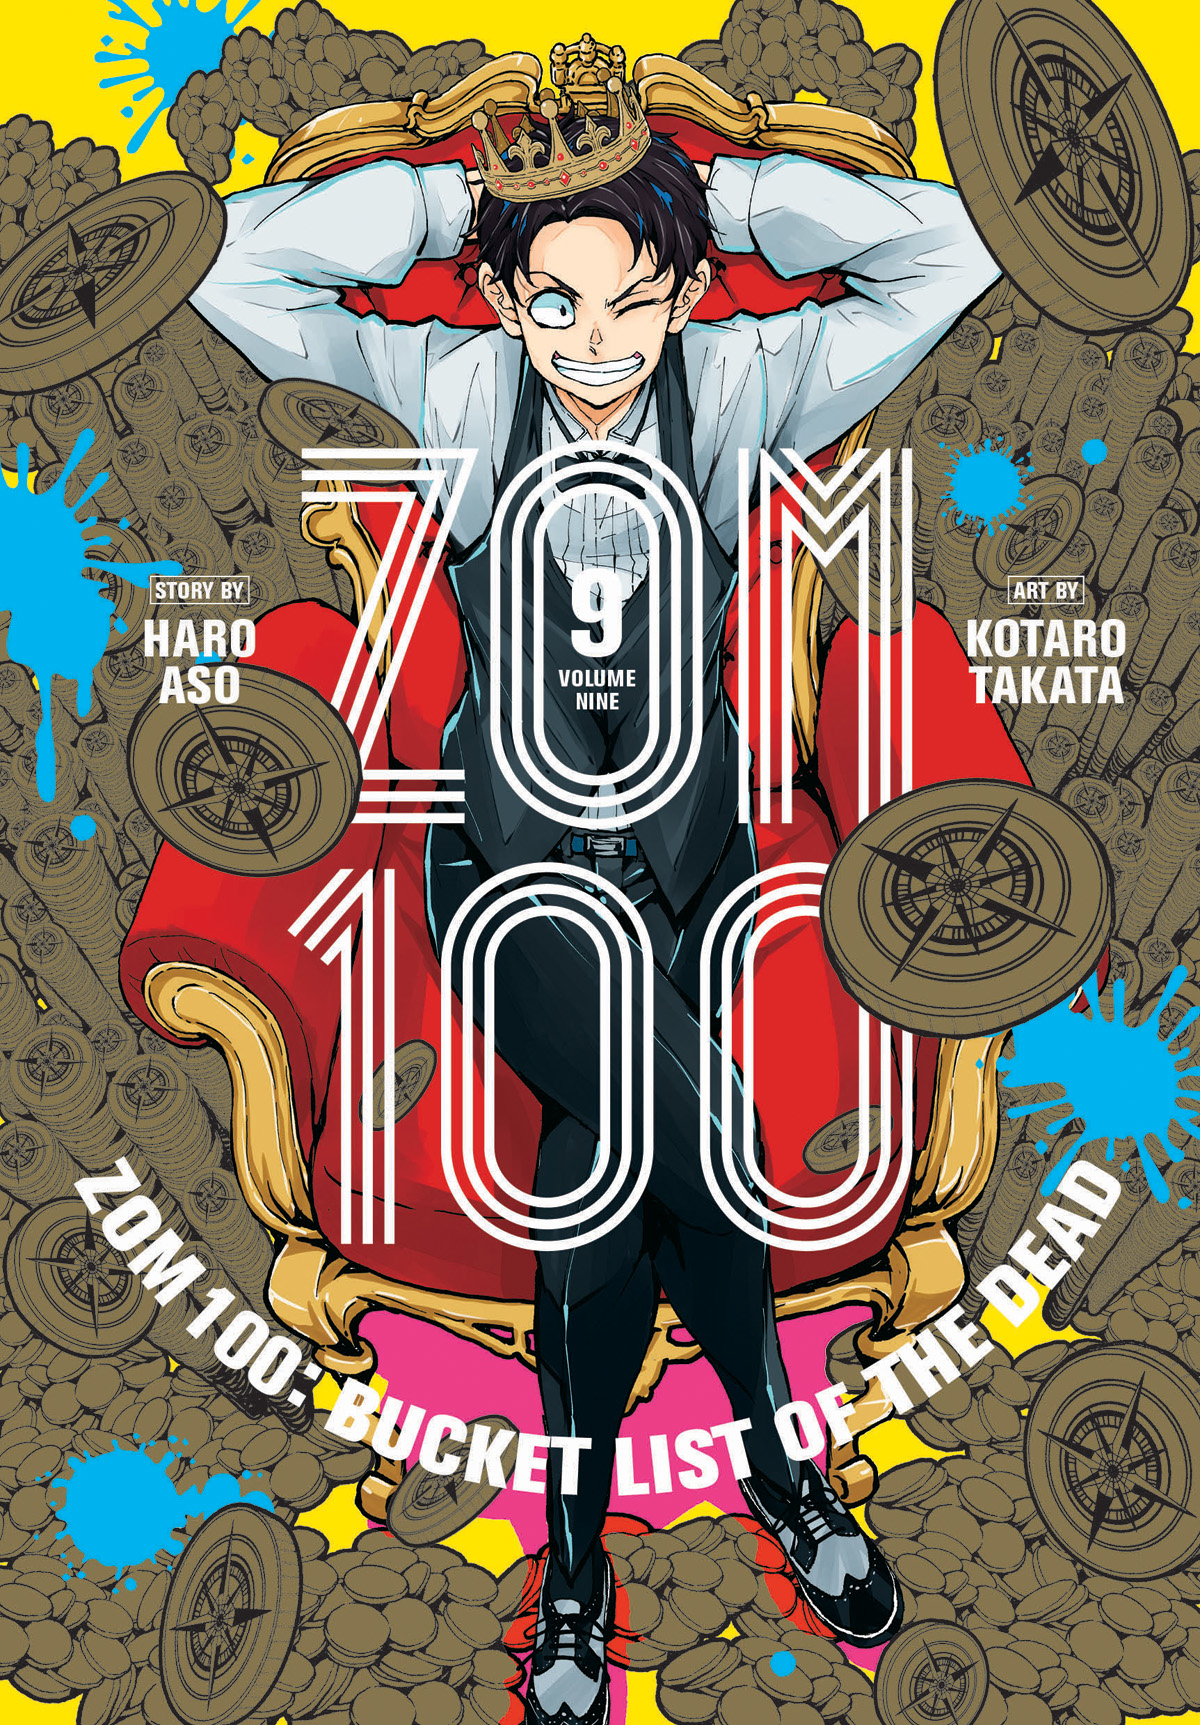 Zom 100 Bucket List of the Dead Manga 100 Bucket List of the Dead Manga Volume 9